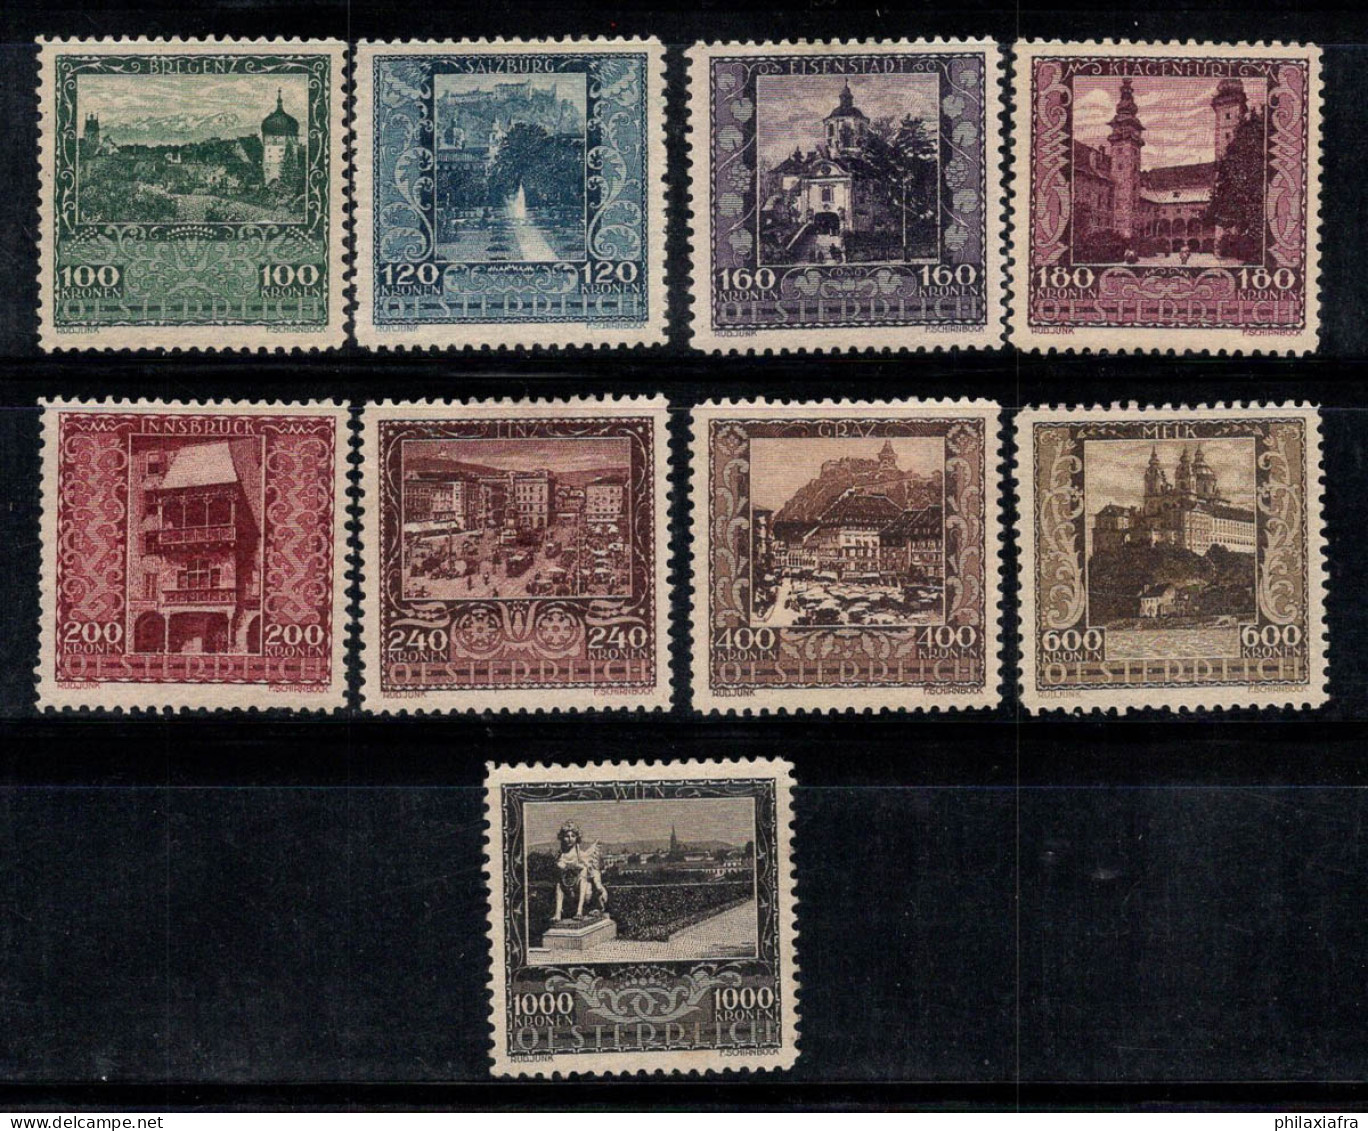 Autriche 1922 Mi. 433-441 Neuf * MH 80% Villes, Vues, Paysages - Unused Stamps